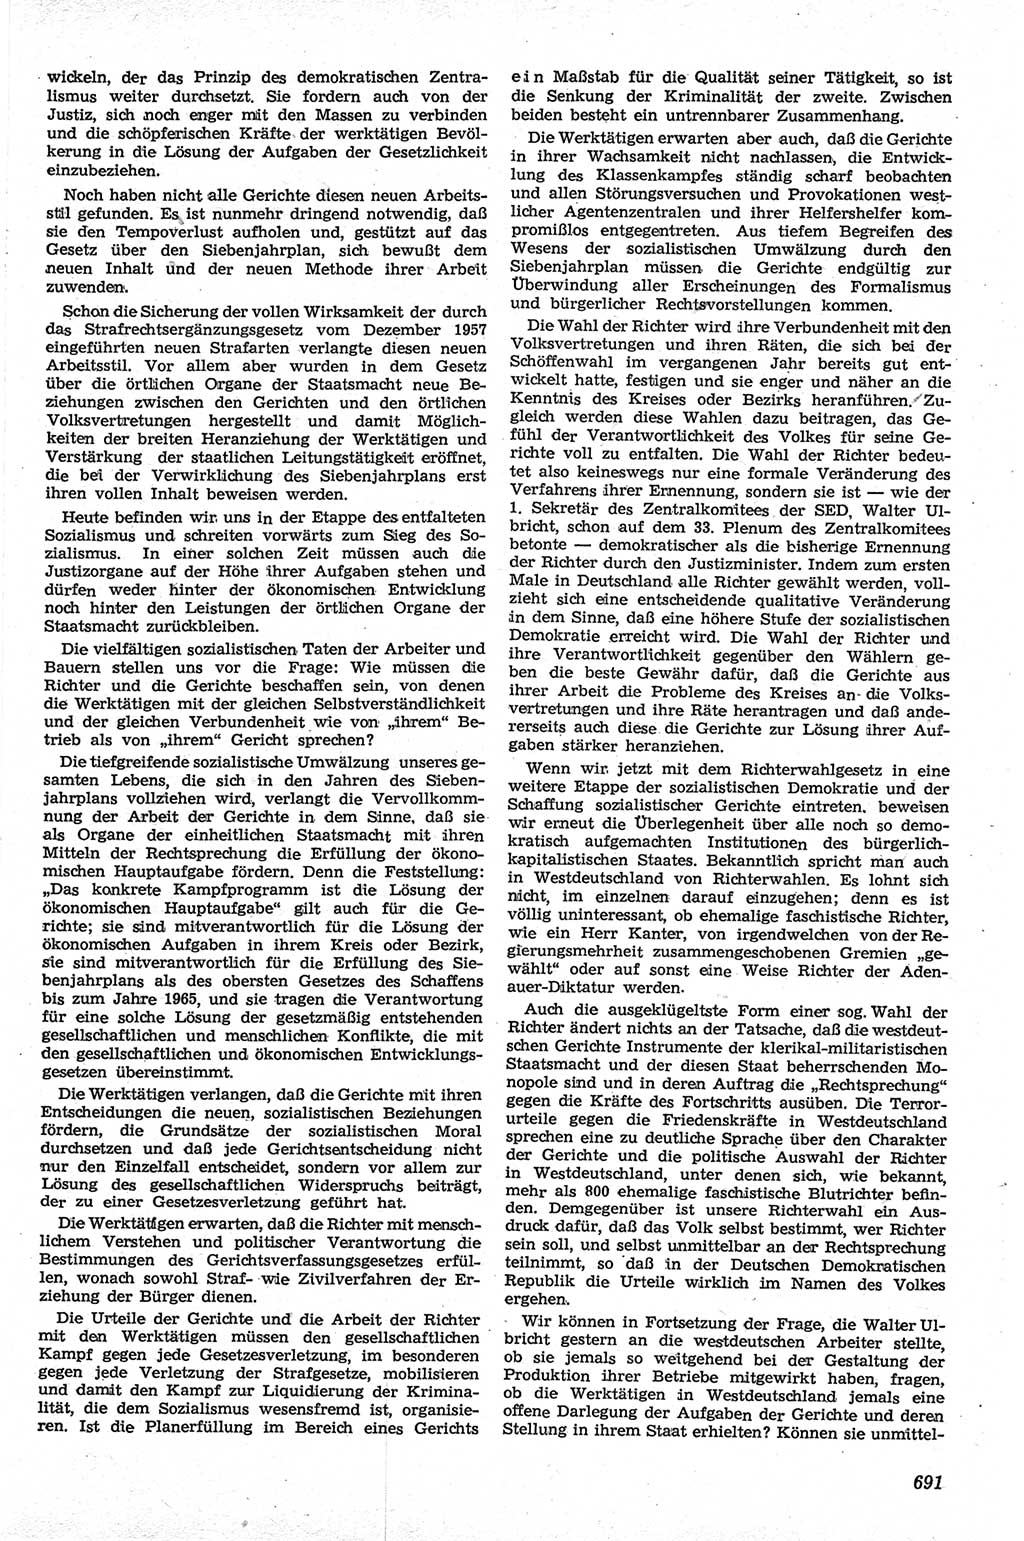 Neue Justiz (NJ), Zeitschrift für Recht und Rechtswissenschaft [Deutsche Demokratische Republik (DDR)], 13. Jahrgang 1959, Seite 691 (NJ DDR 1959, S. 691)